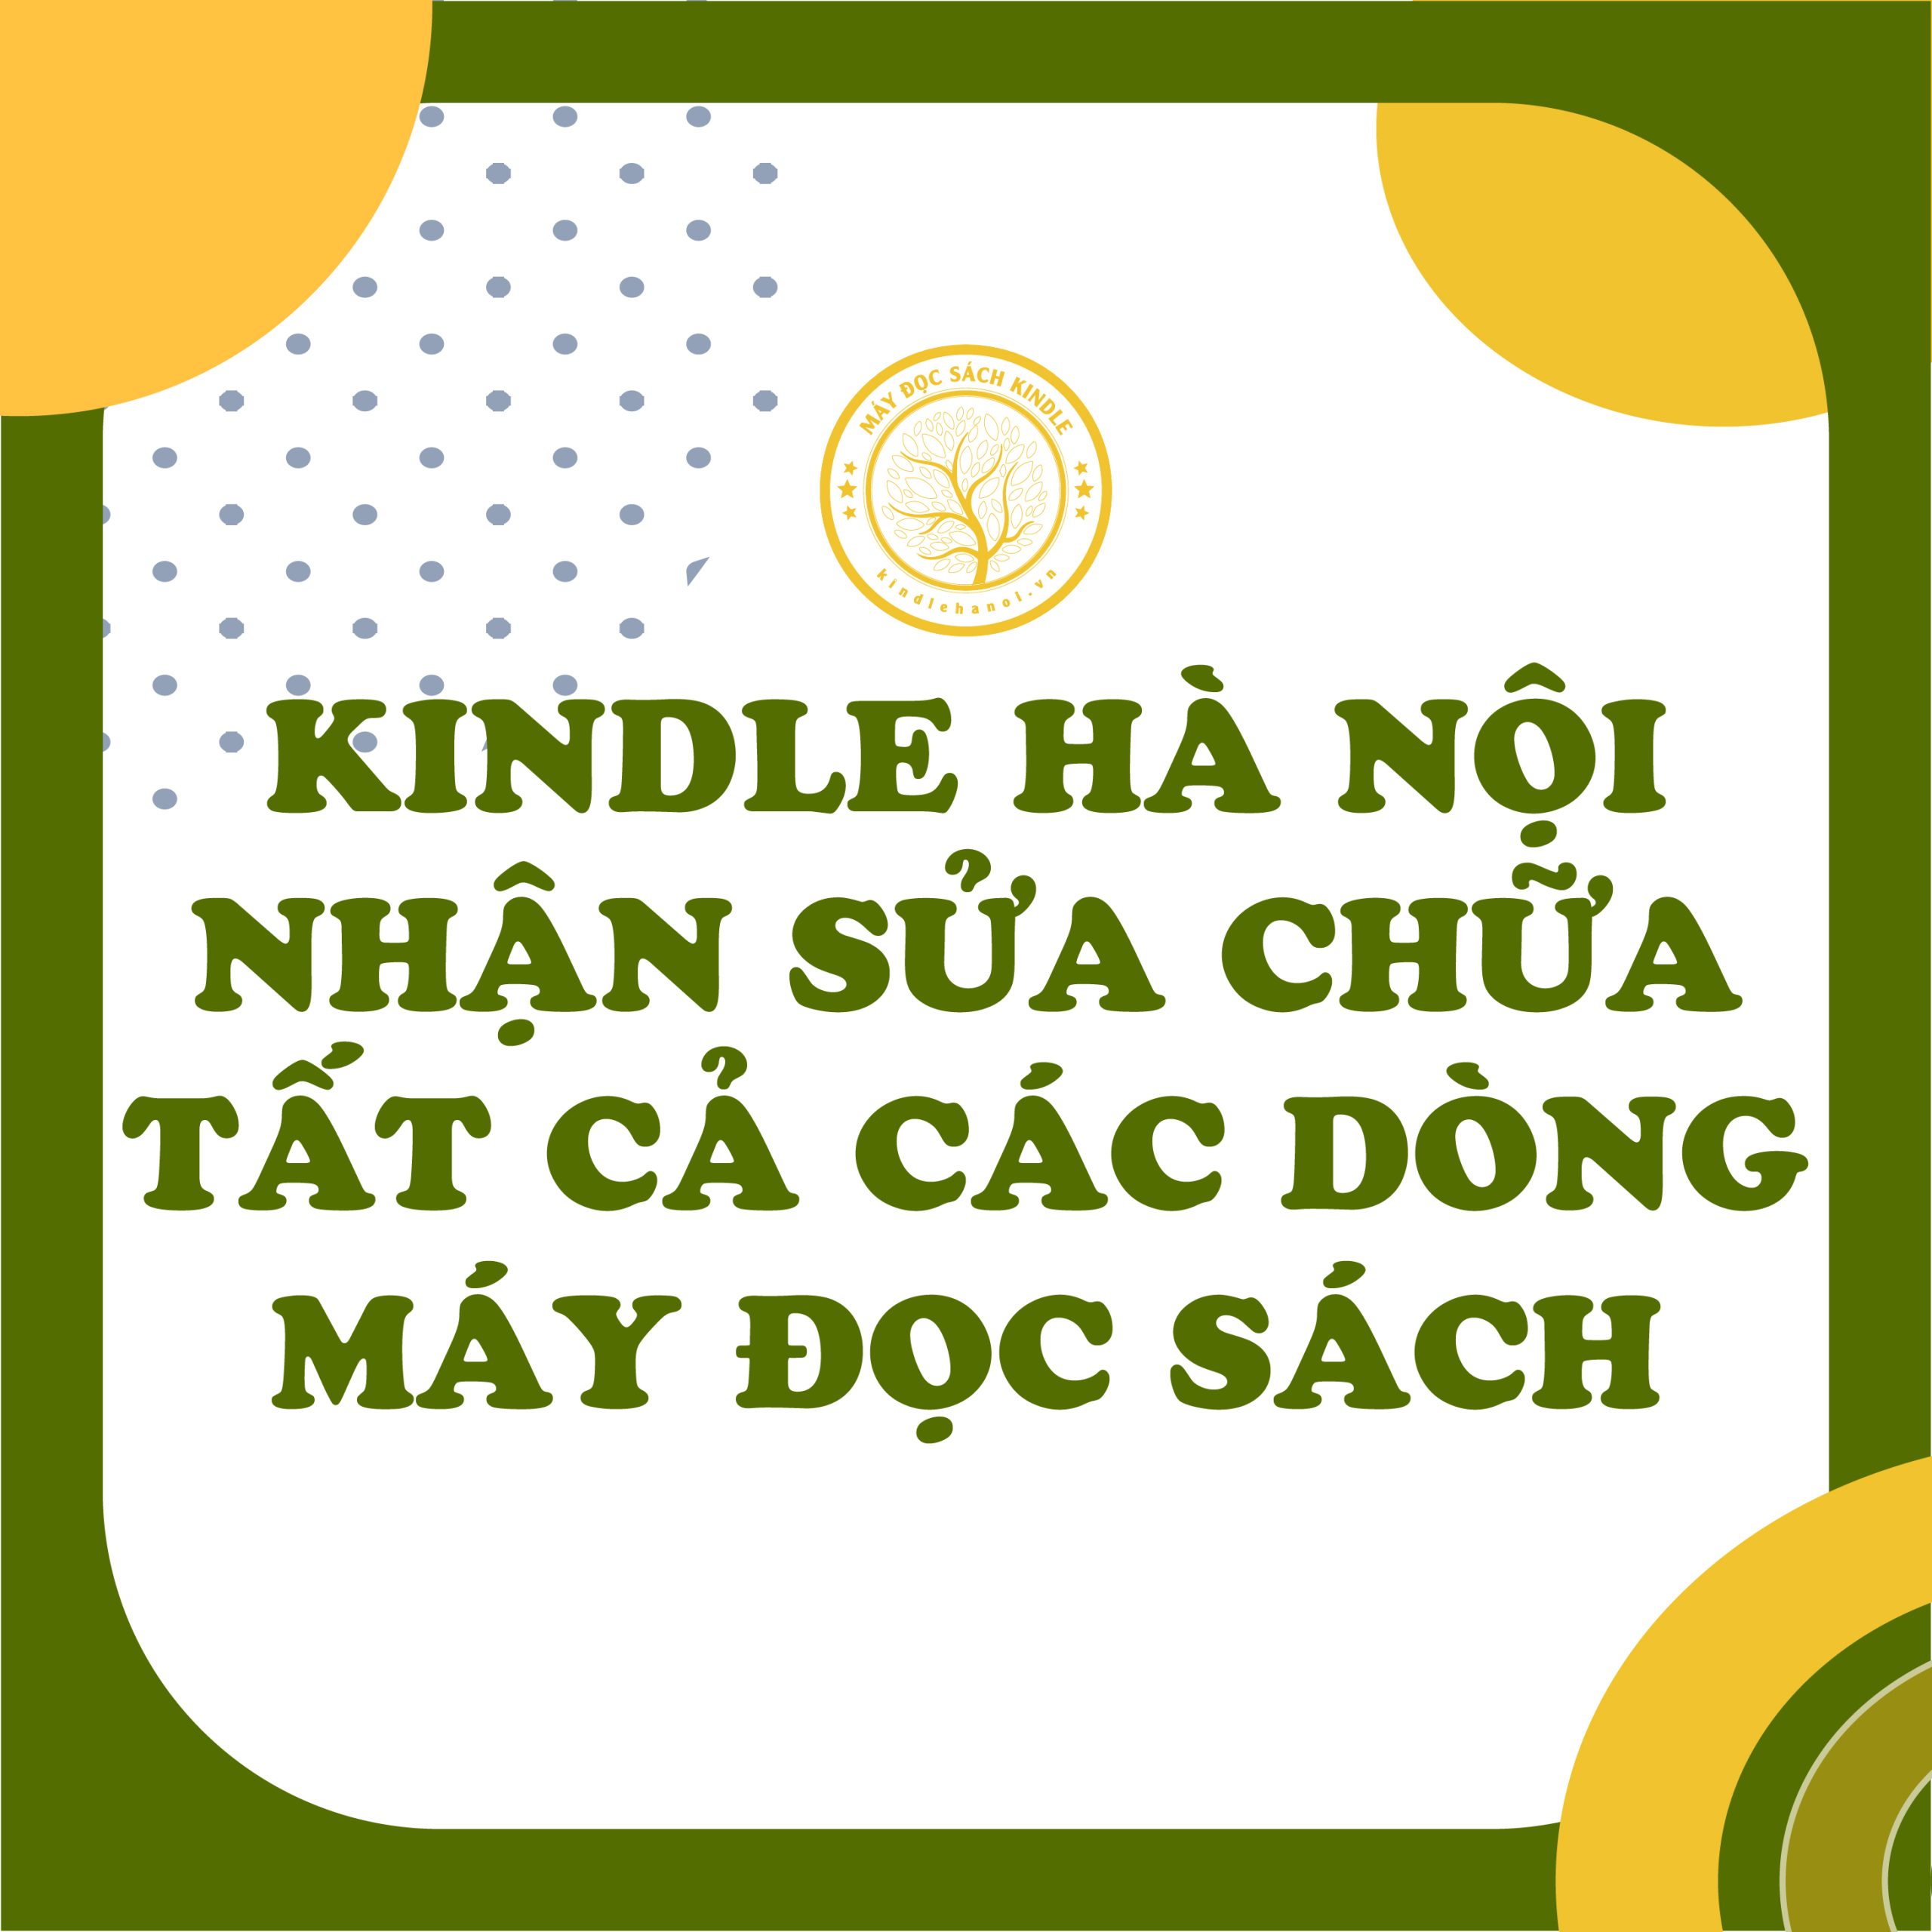 Kindle Hà Nội nhận sửa chữa tất cả các dòng máy đọc sách